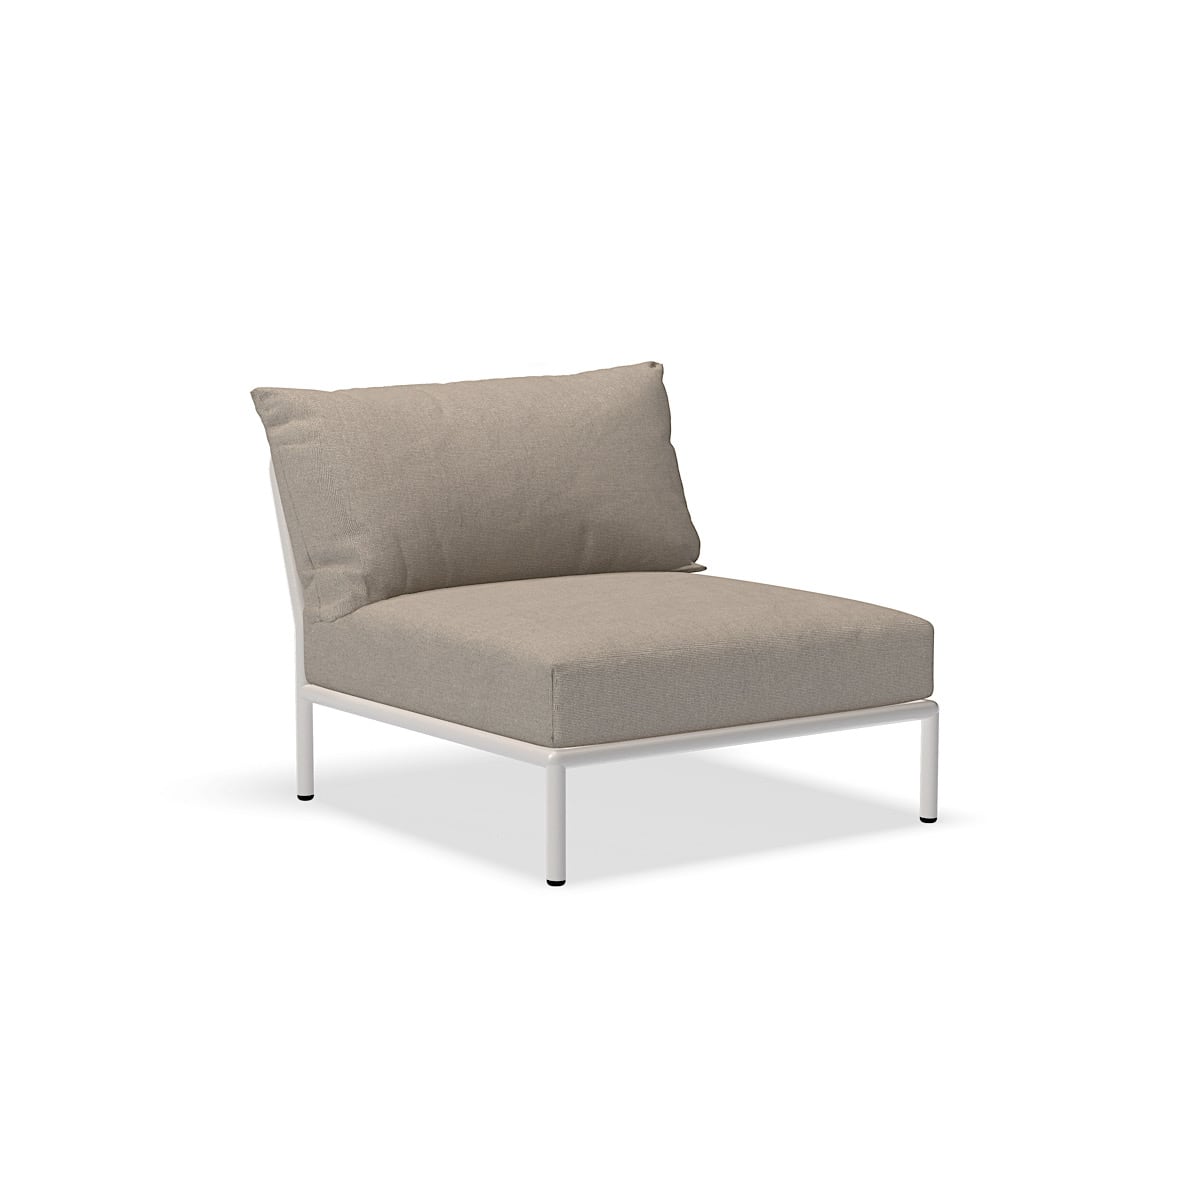 כיסא - 22205-9243 - כיסא, אפר (HERITAGE), מבנה לבן